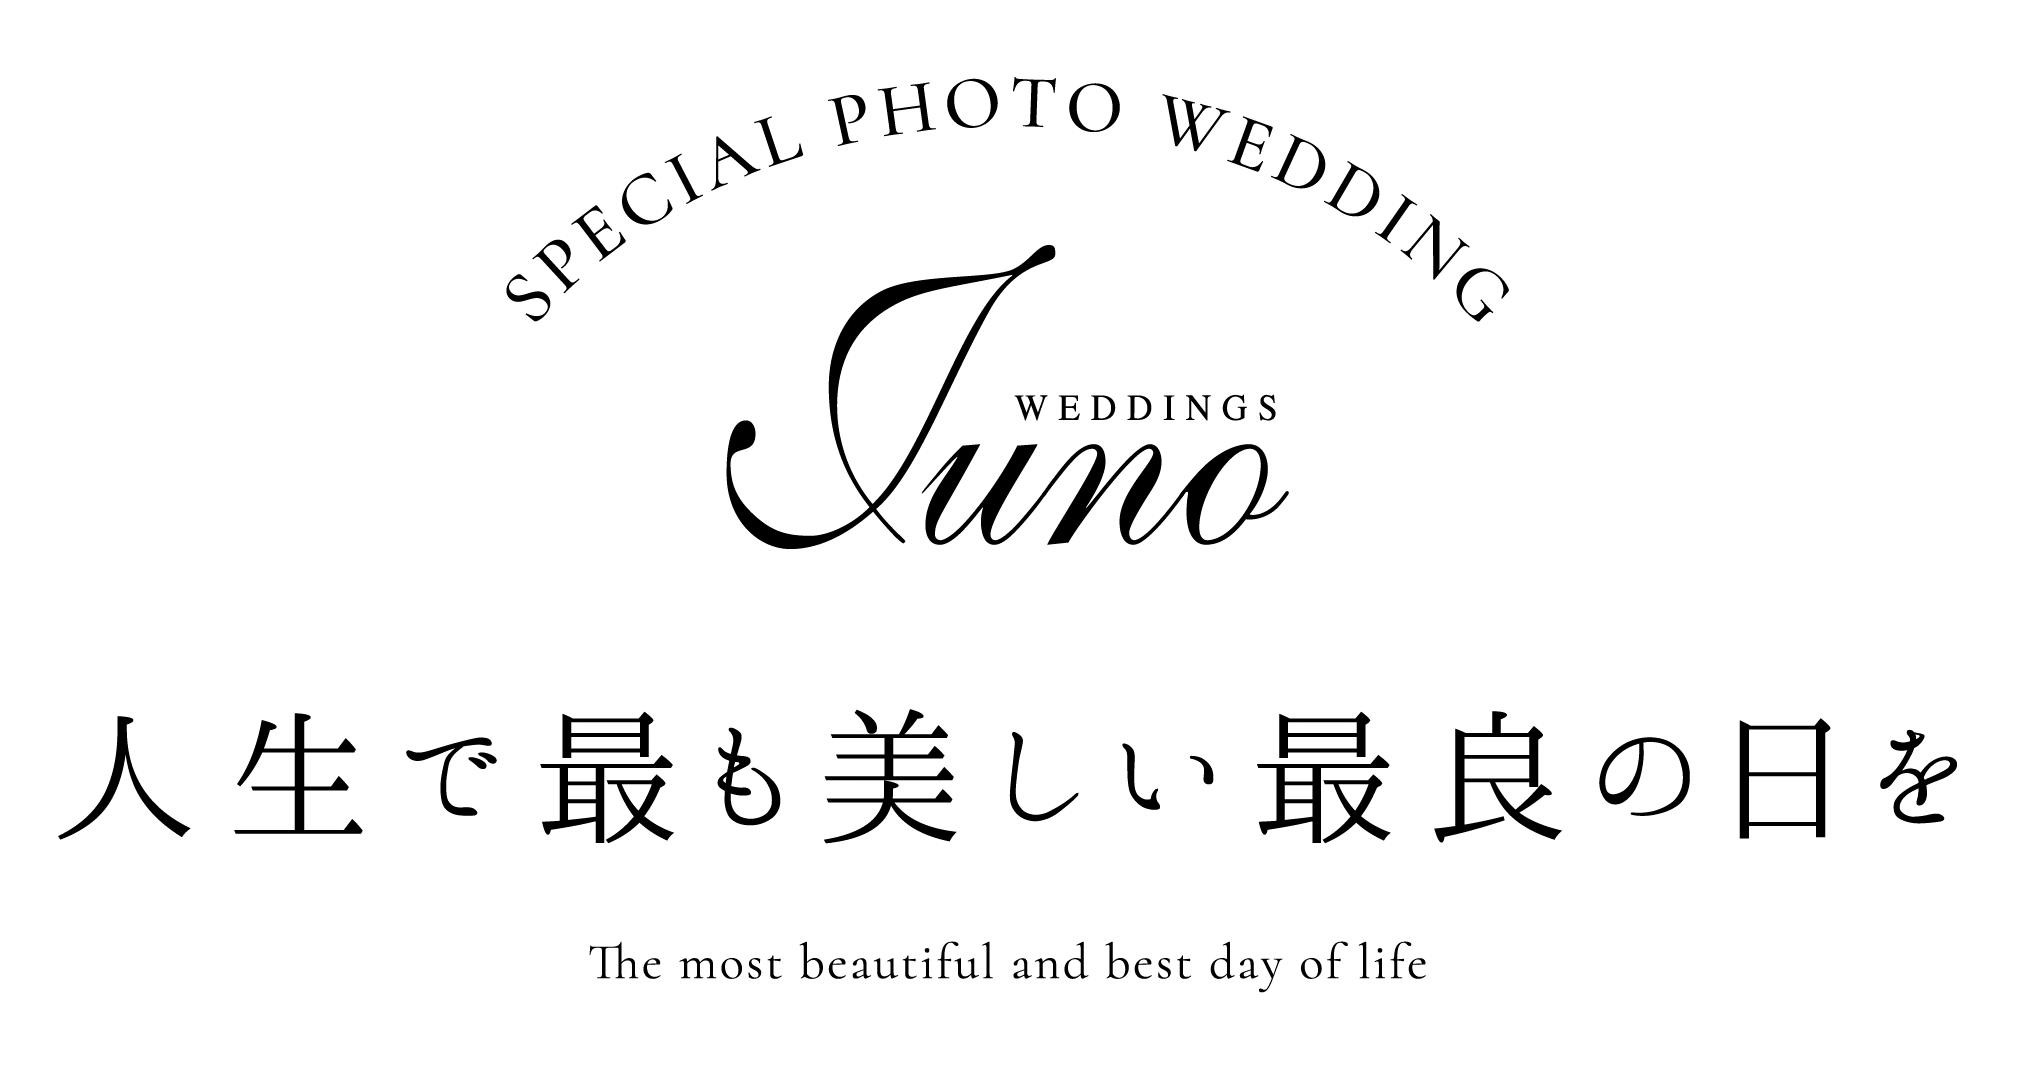 JUNO PHOTO WEDDING